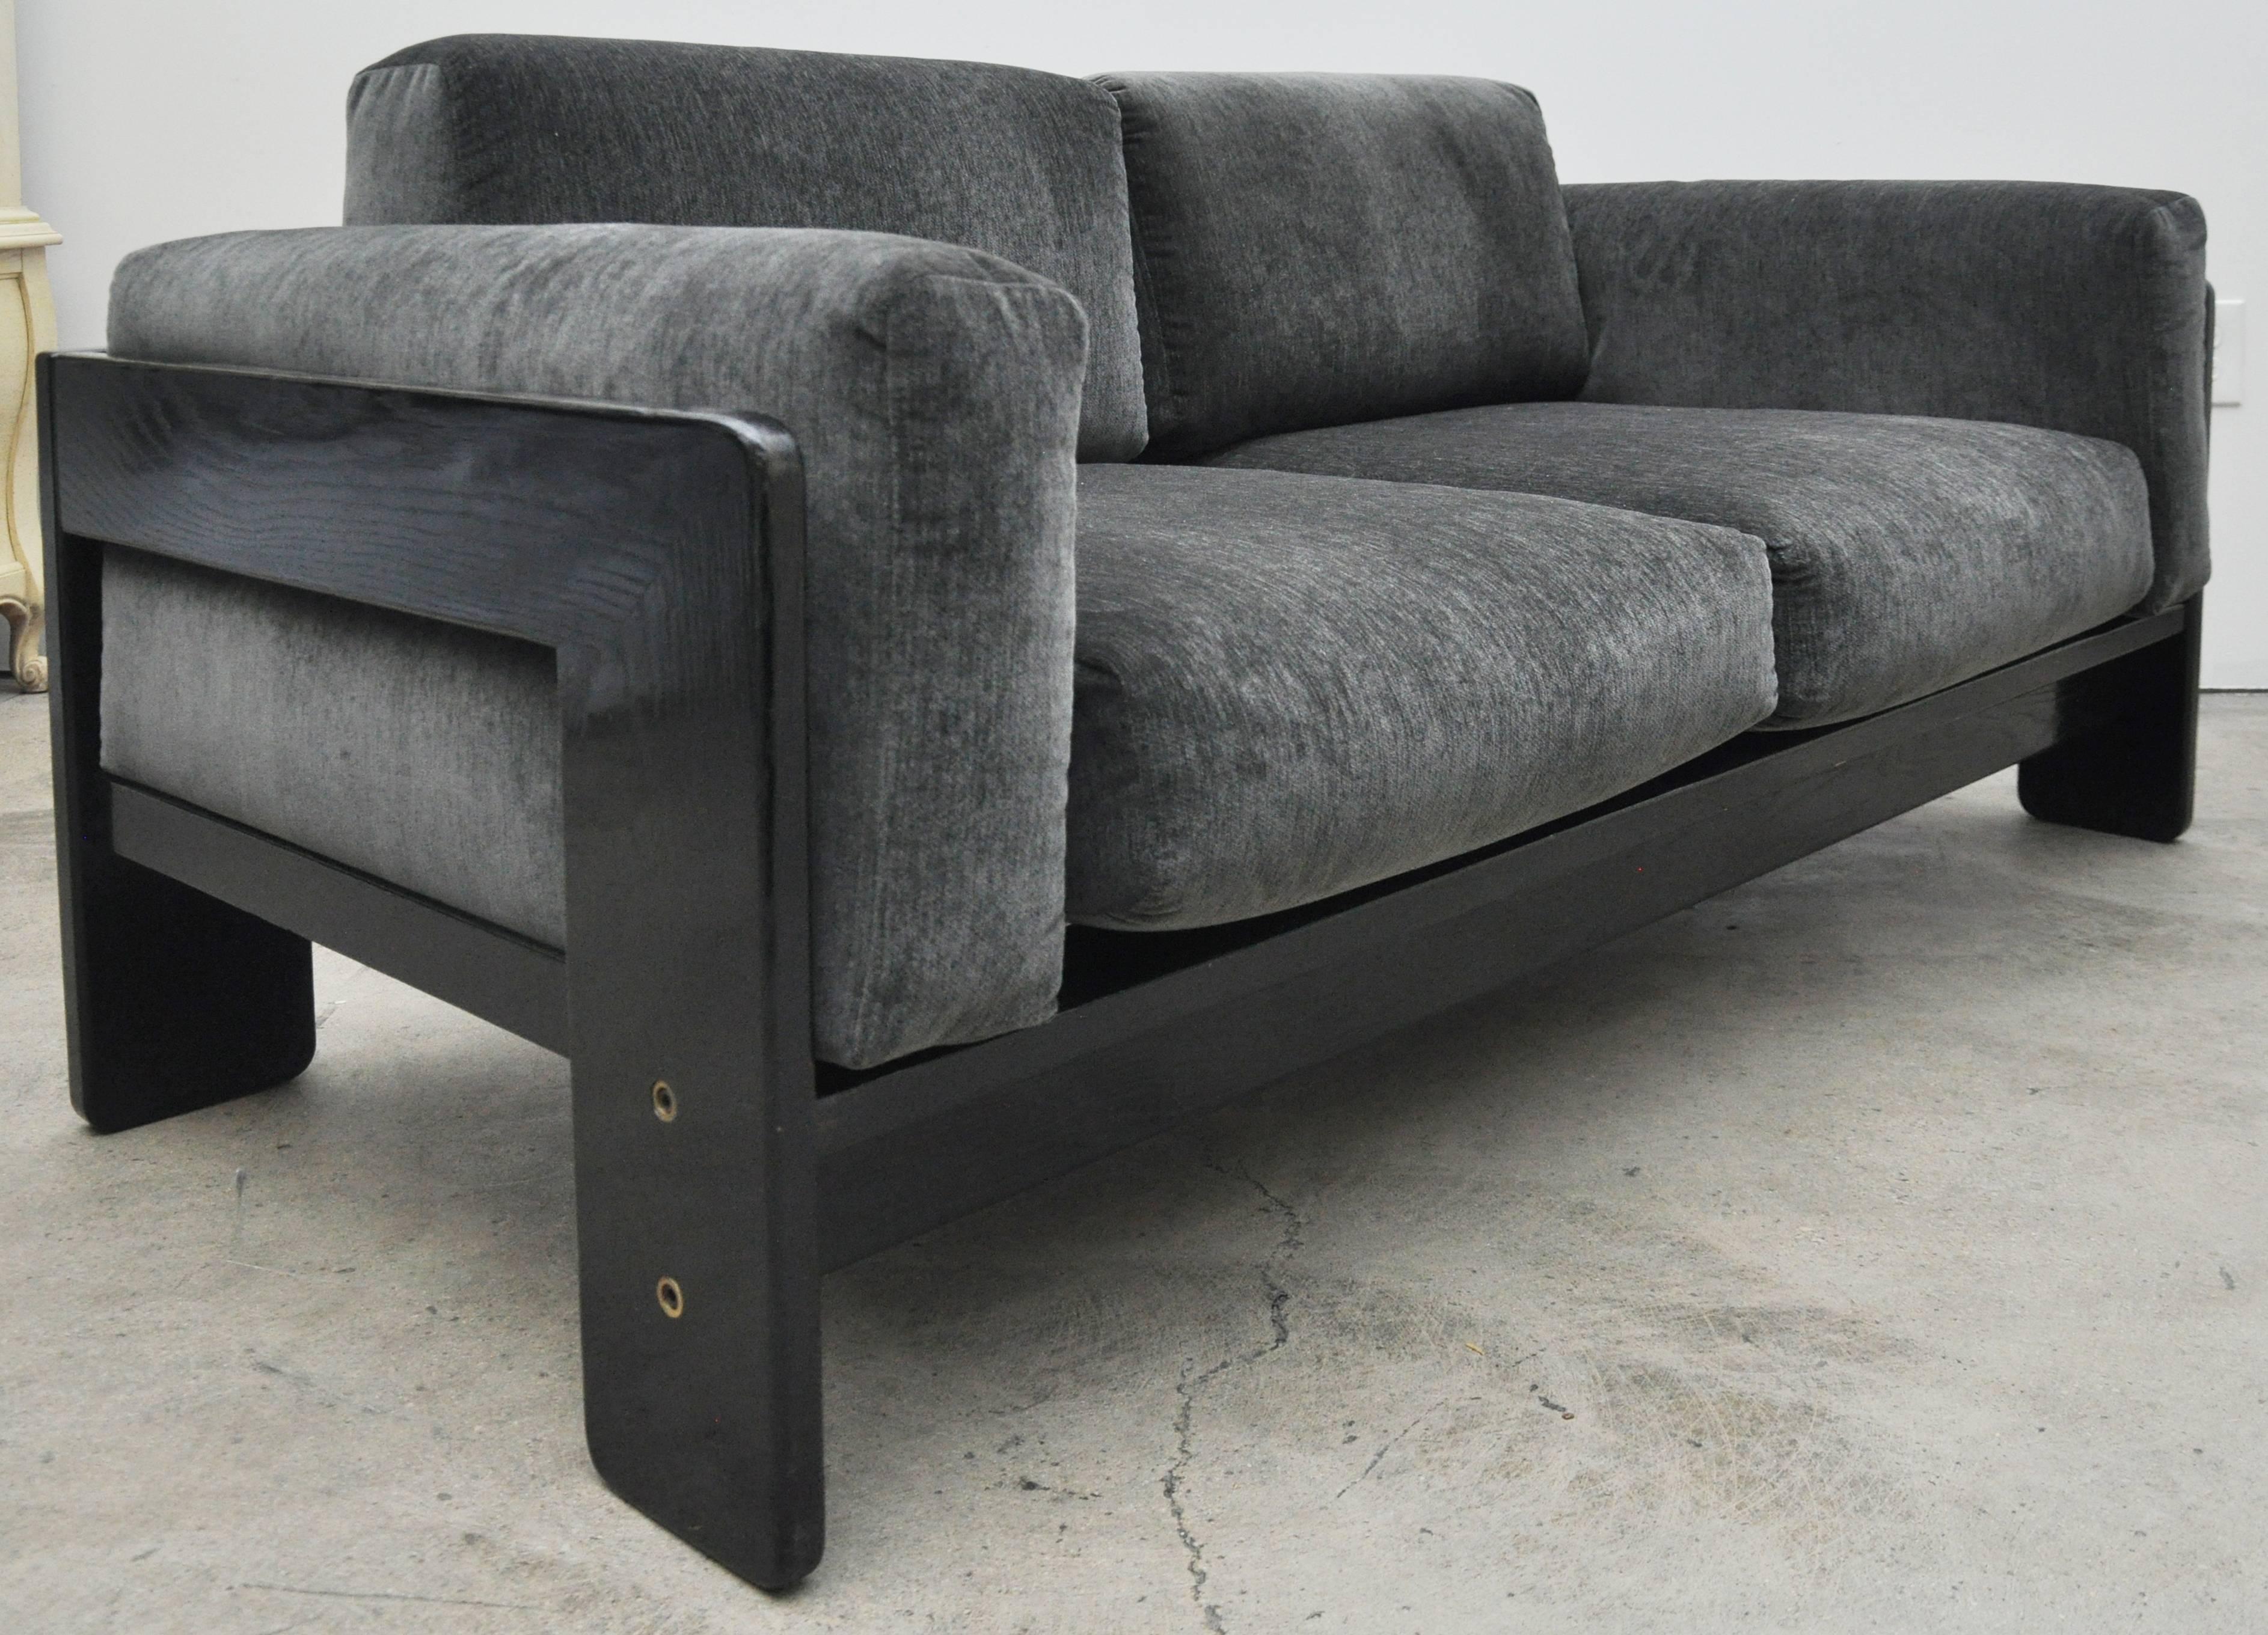 Mid-20th Century Bastiano Sofa by Tobia Scarpa, New Upholstery